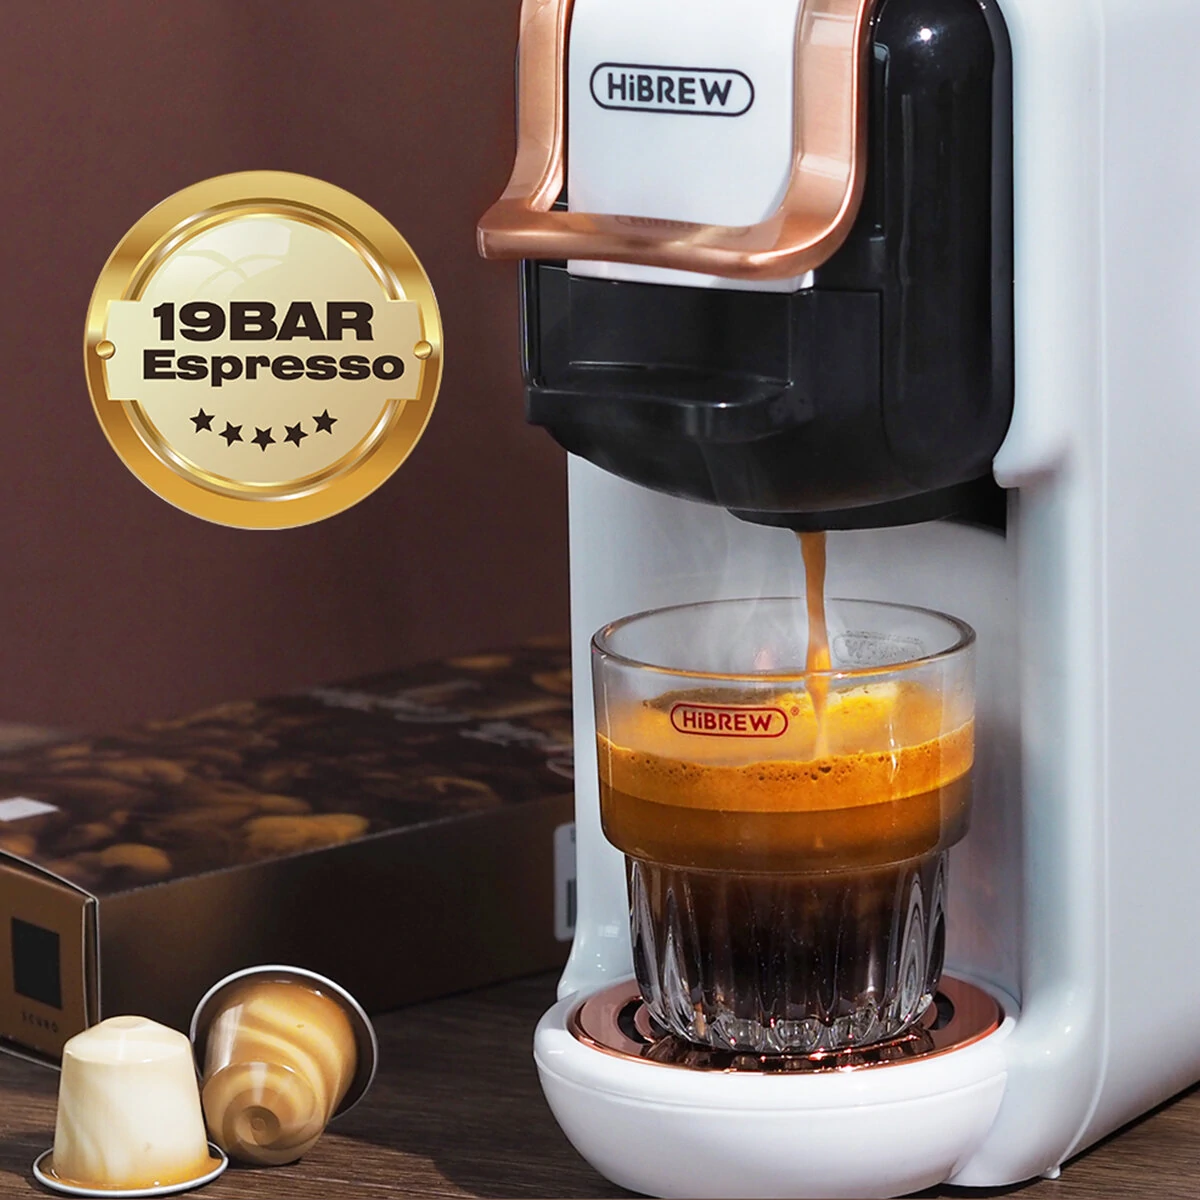 HiBREW H2B kávovar 5v1 z českého skladu za výhodnú cenu